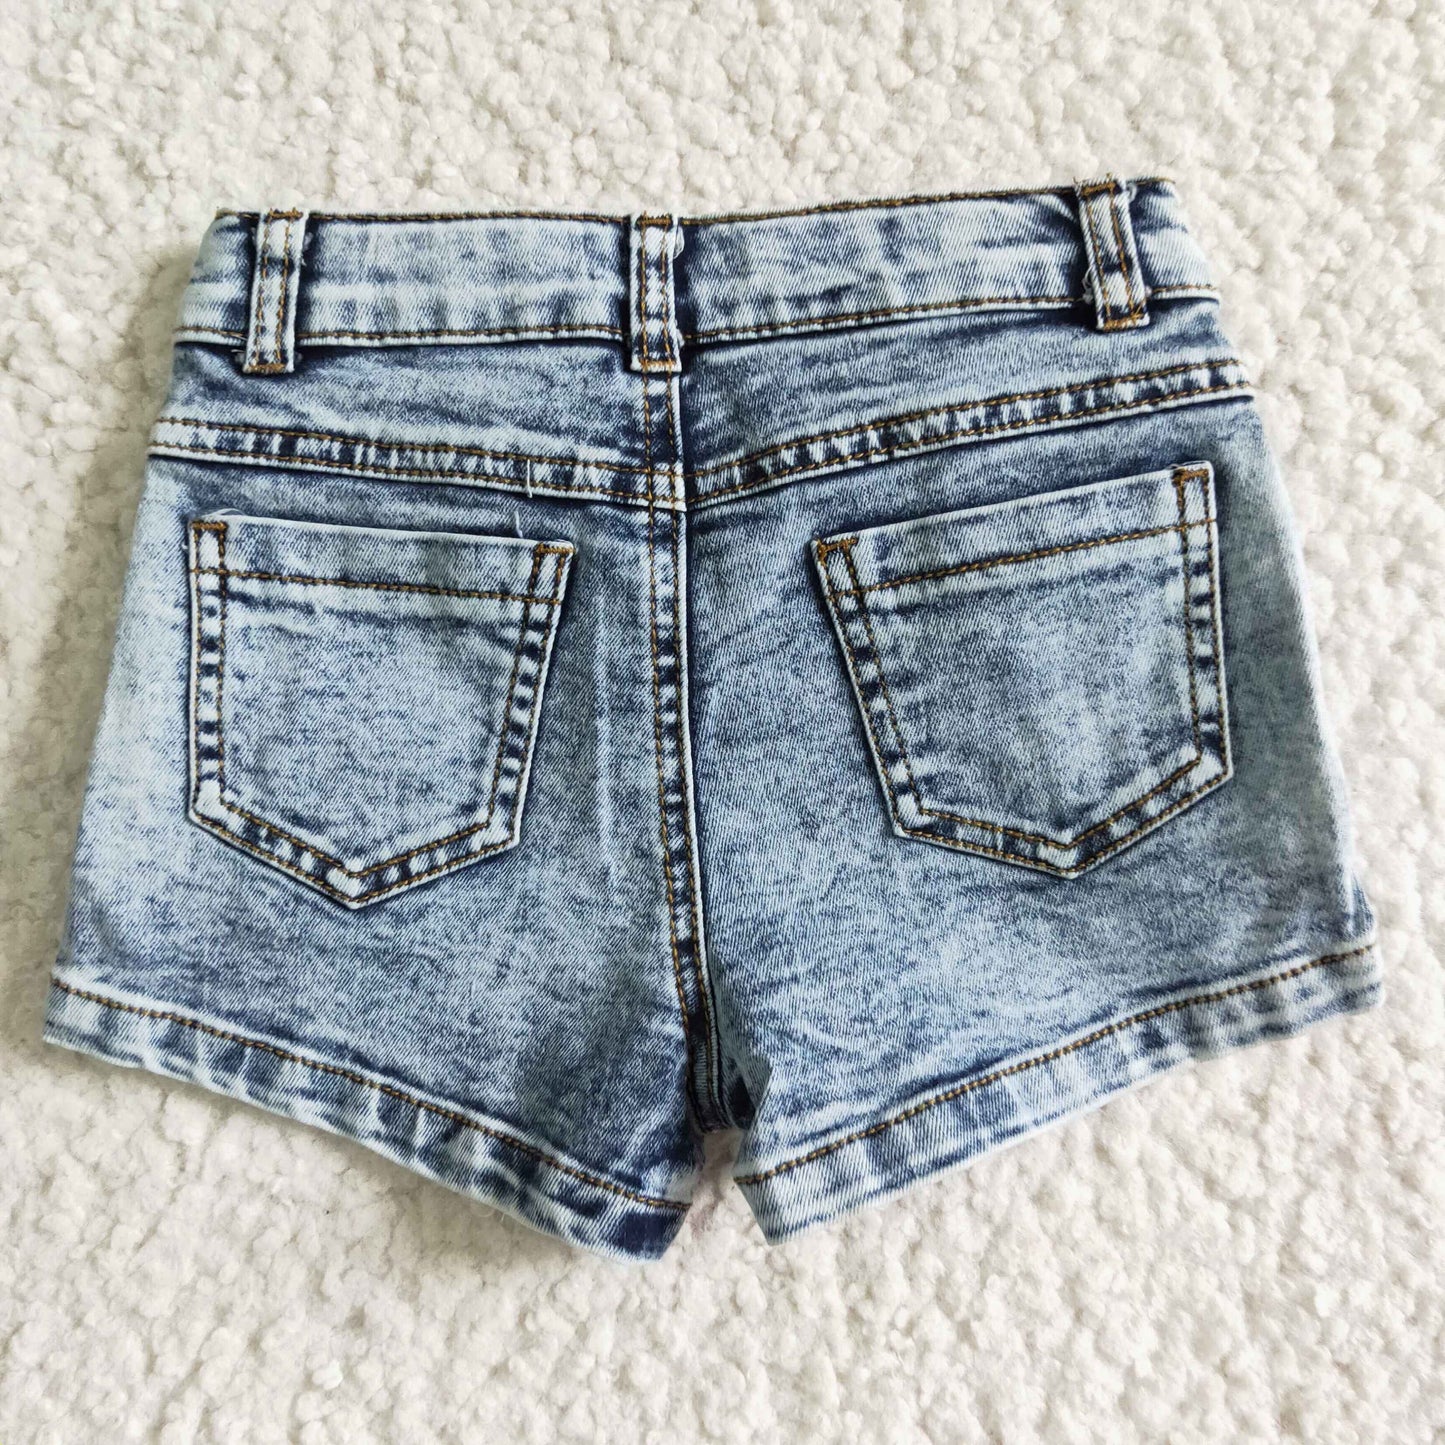 Washed white elastic waistband jeans baby girls denim shorts